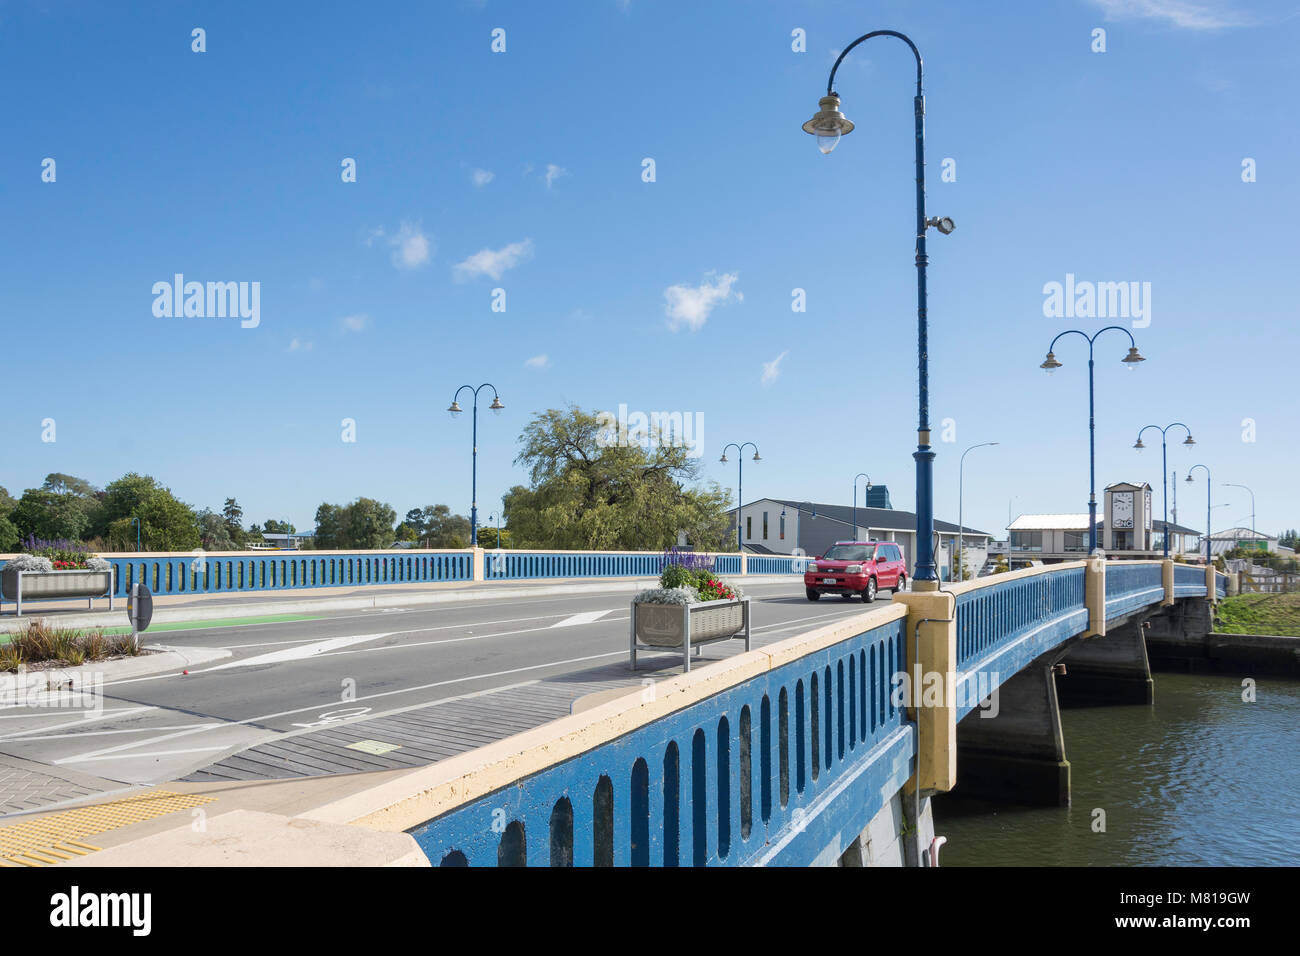 Road bridge across River Kaiapoi, Williams Street, Kaiapoi, Canterbury Region, New Zealand Stock Photo